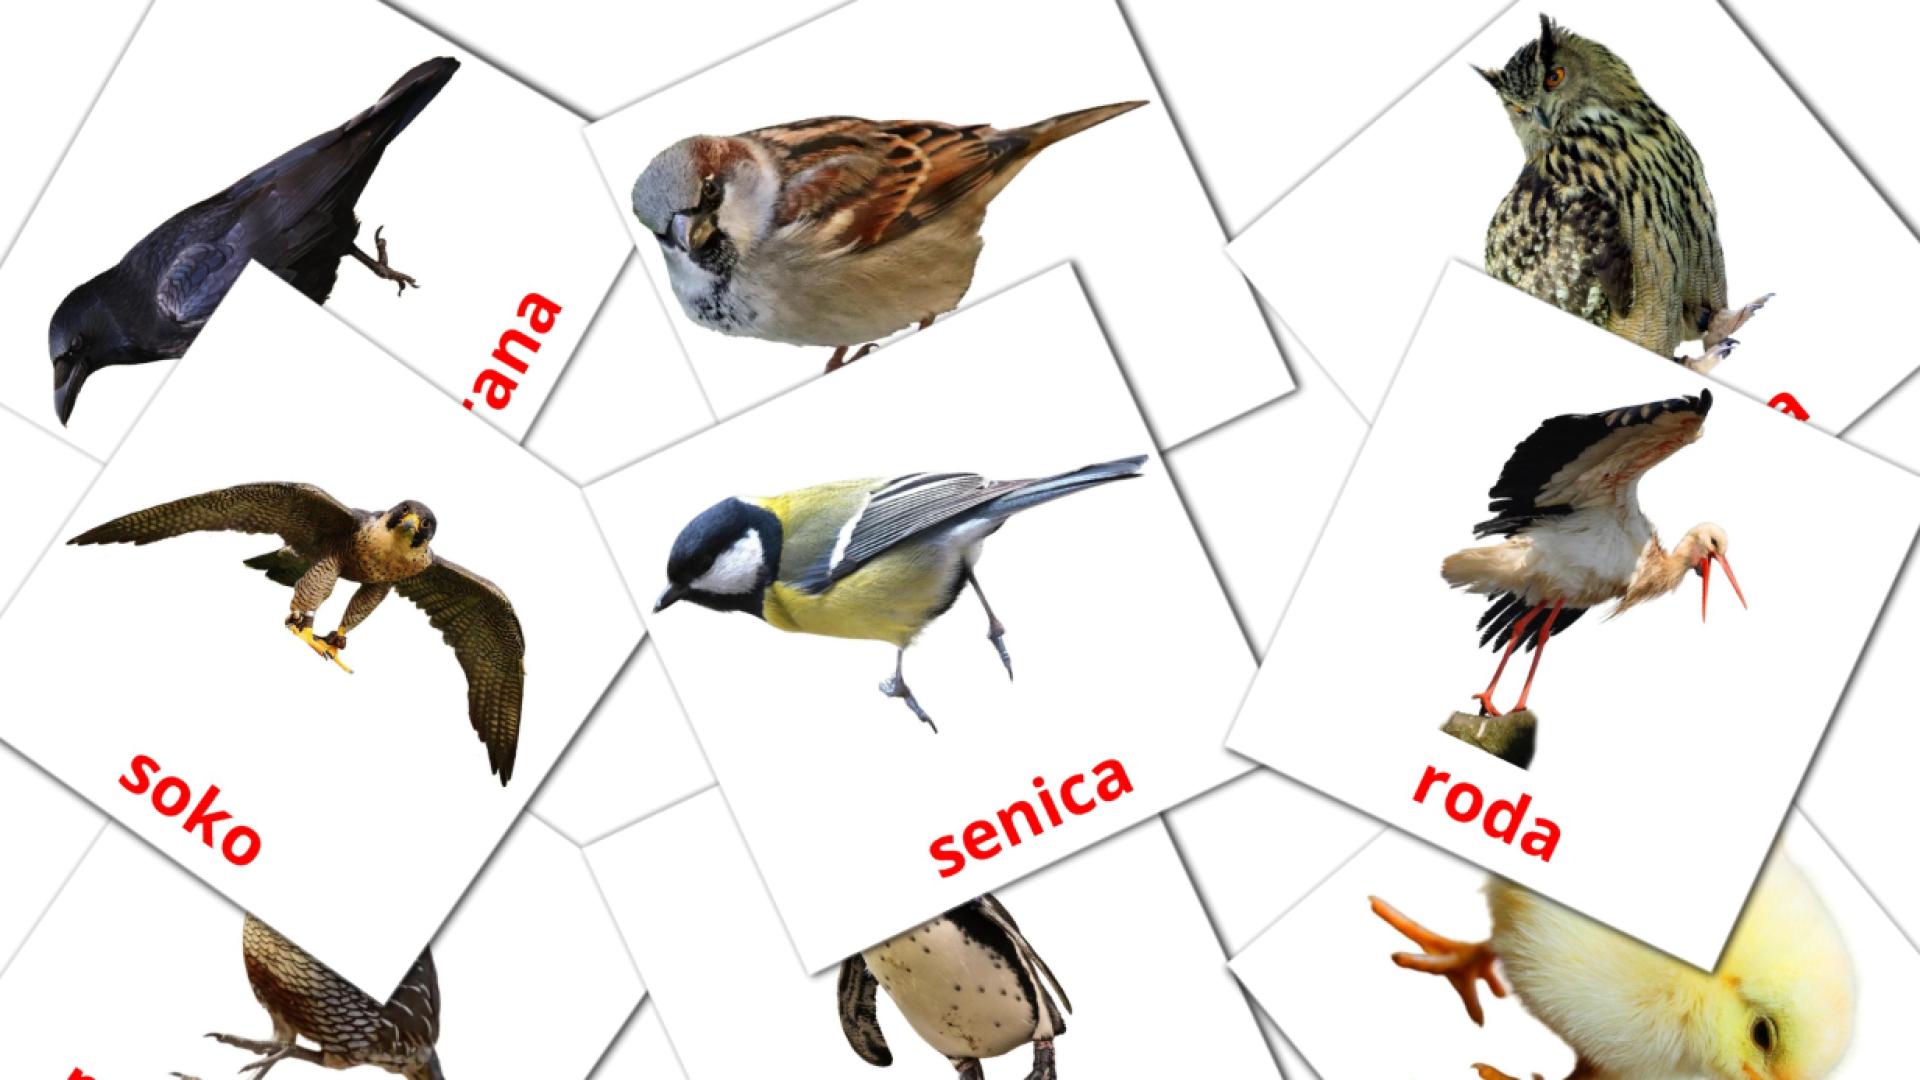 Ptice servisch woordenschat flashcards